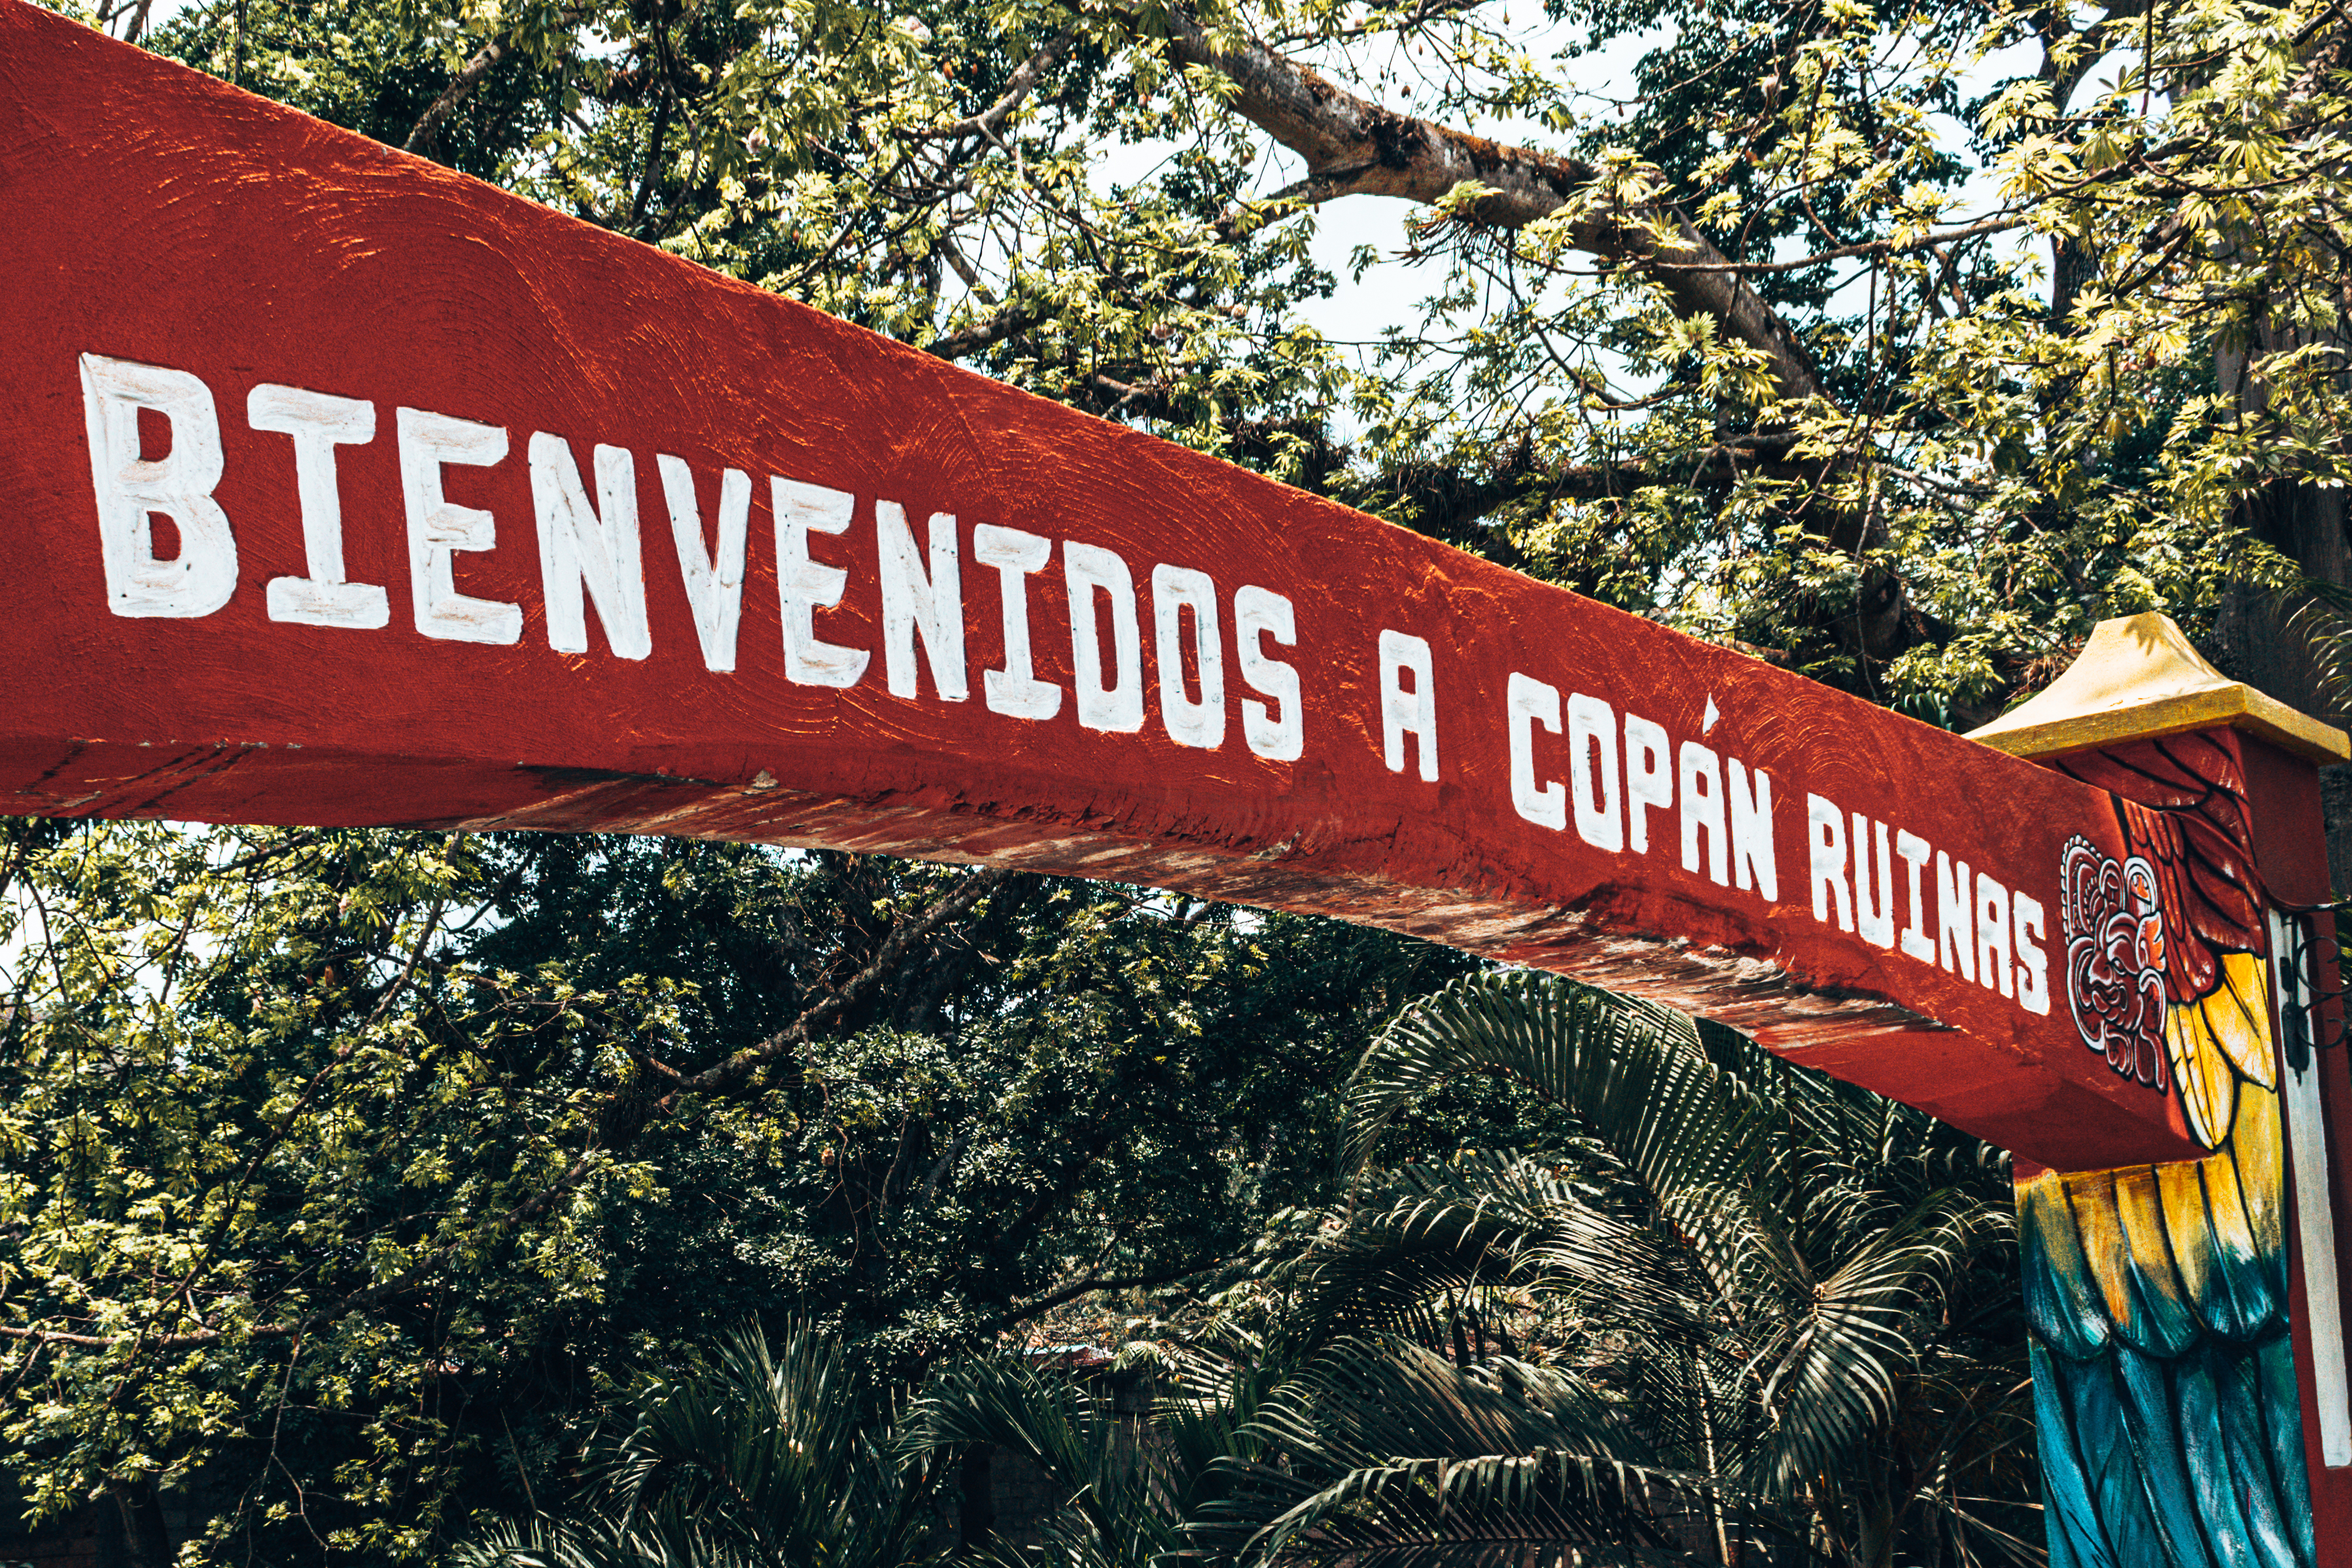 Bienvenidos a Copan Ruinas sign in Honduras wediditourway.com